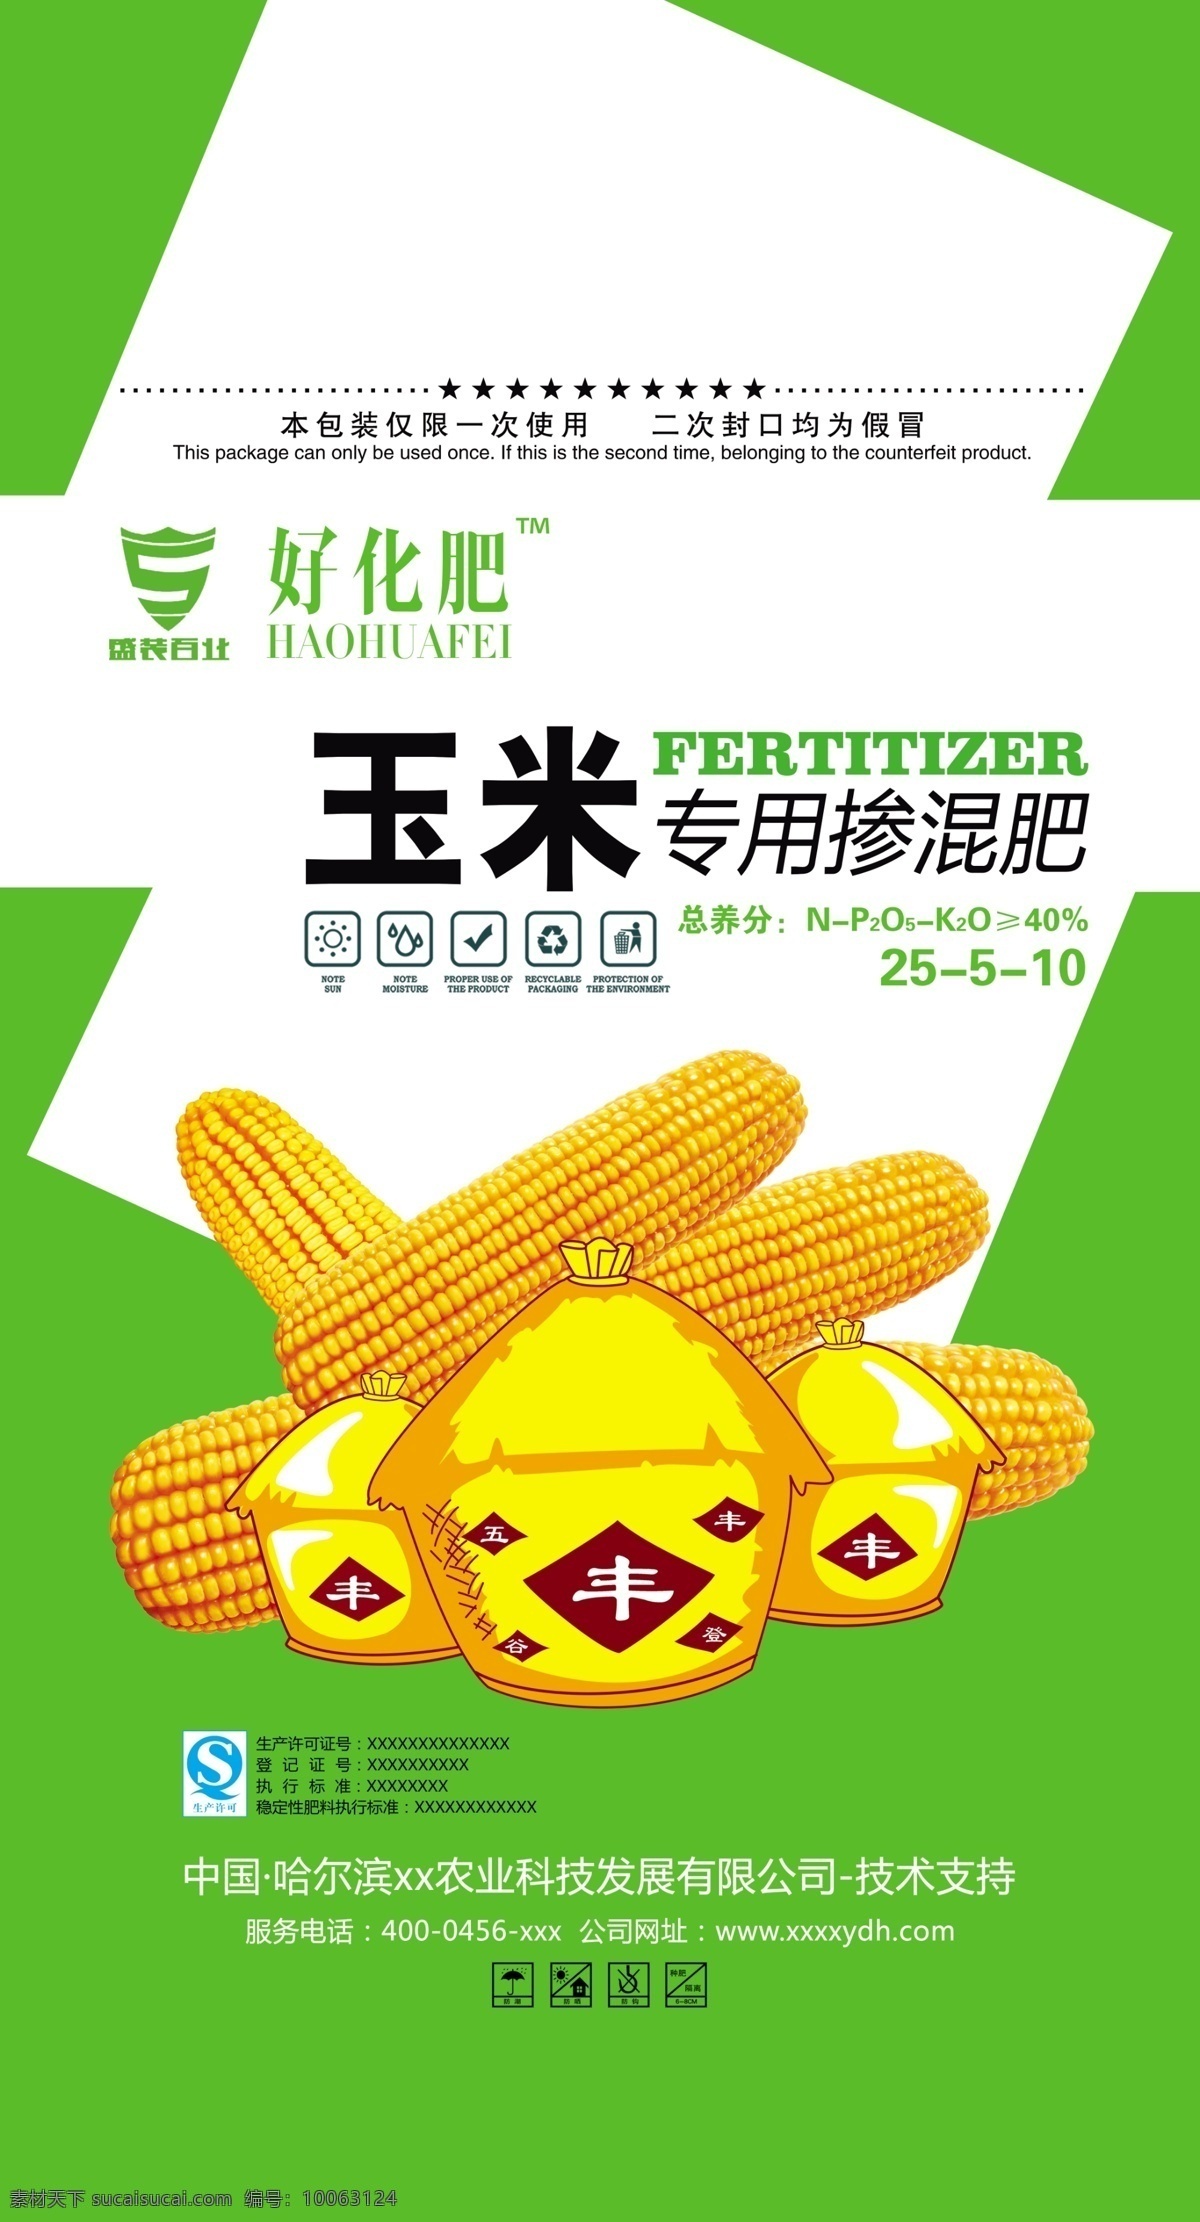 化肥 肥料 包装 平面图 玉米 大豆水稻 袋子 大米包装 包装设计